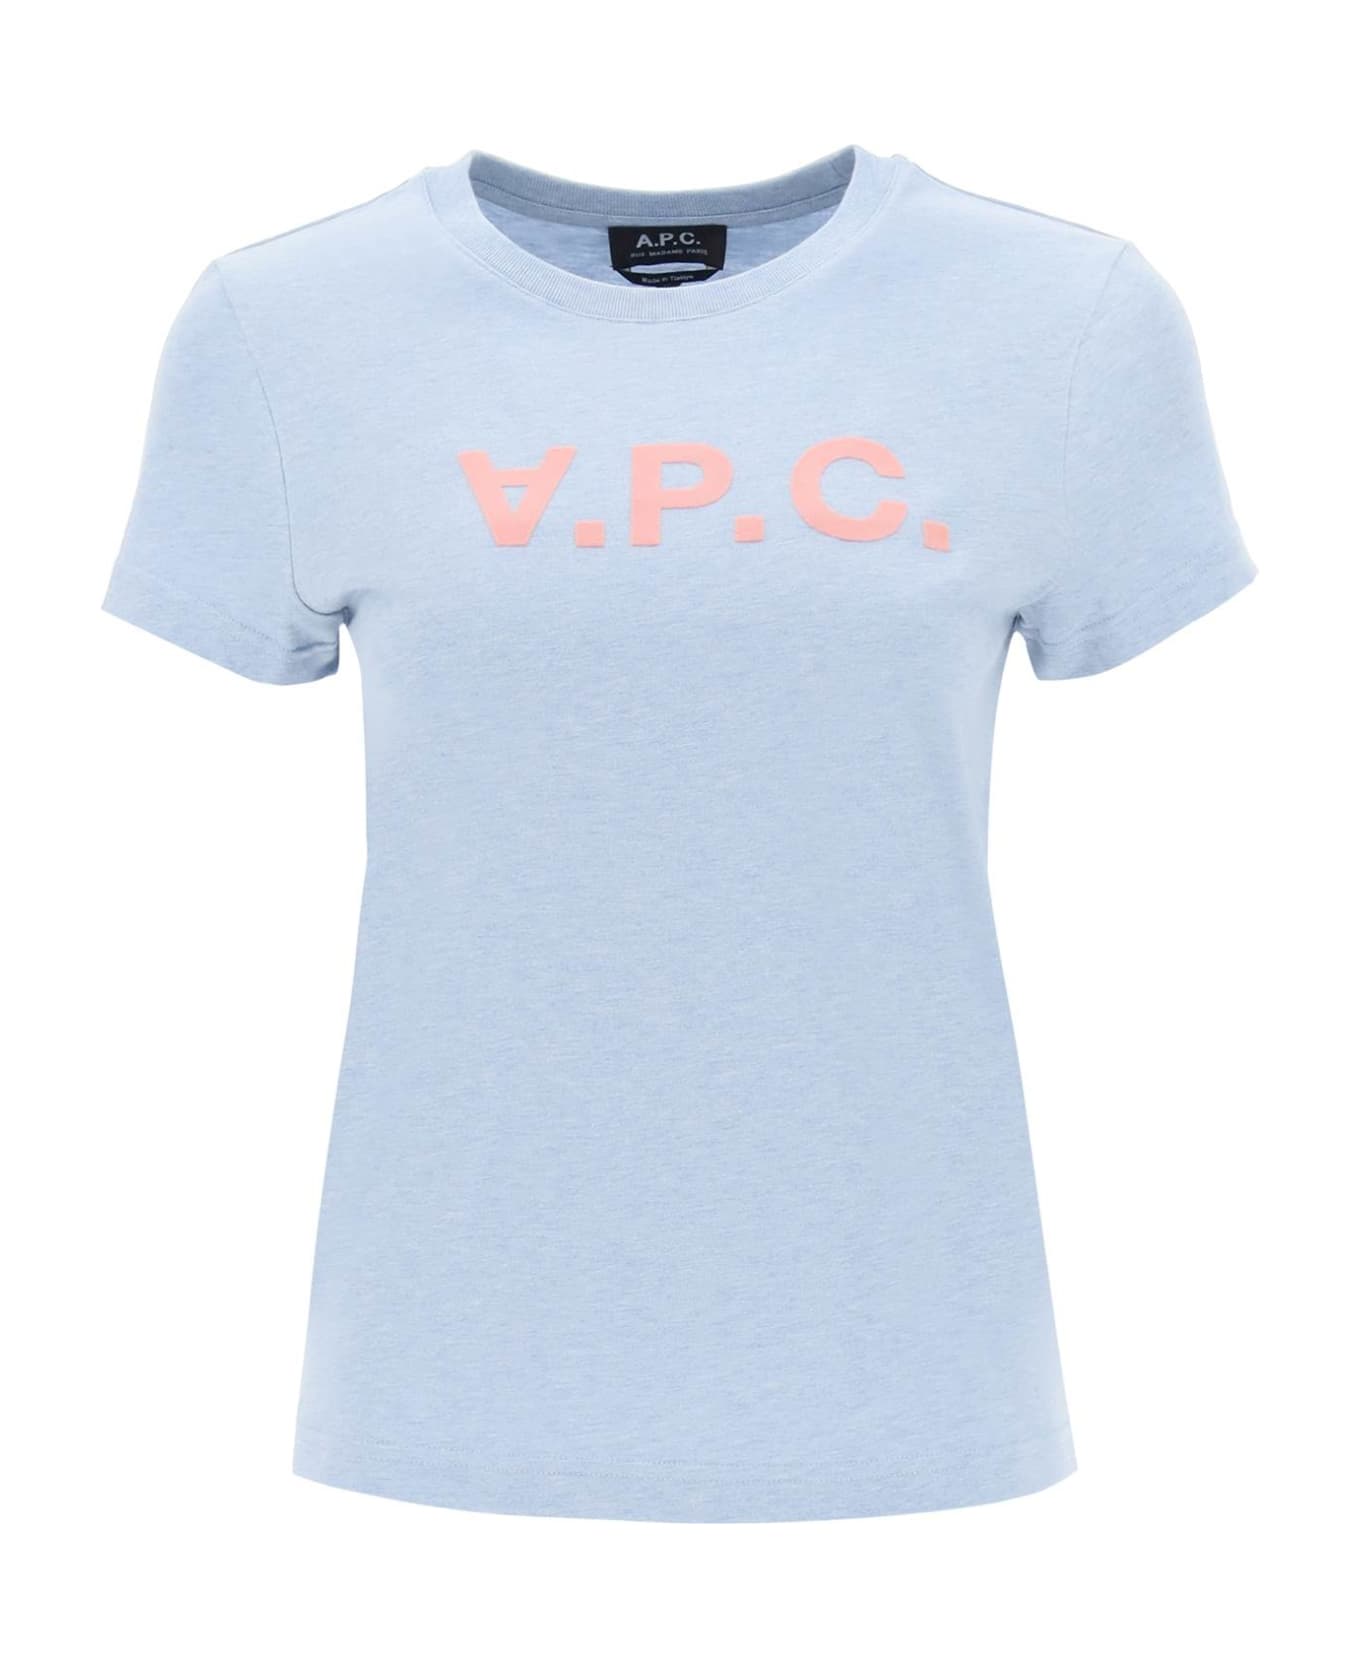 A.P.C. V.p.c. Logo T-shirt - Light blue